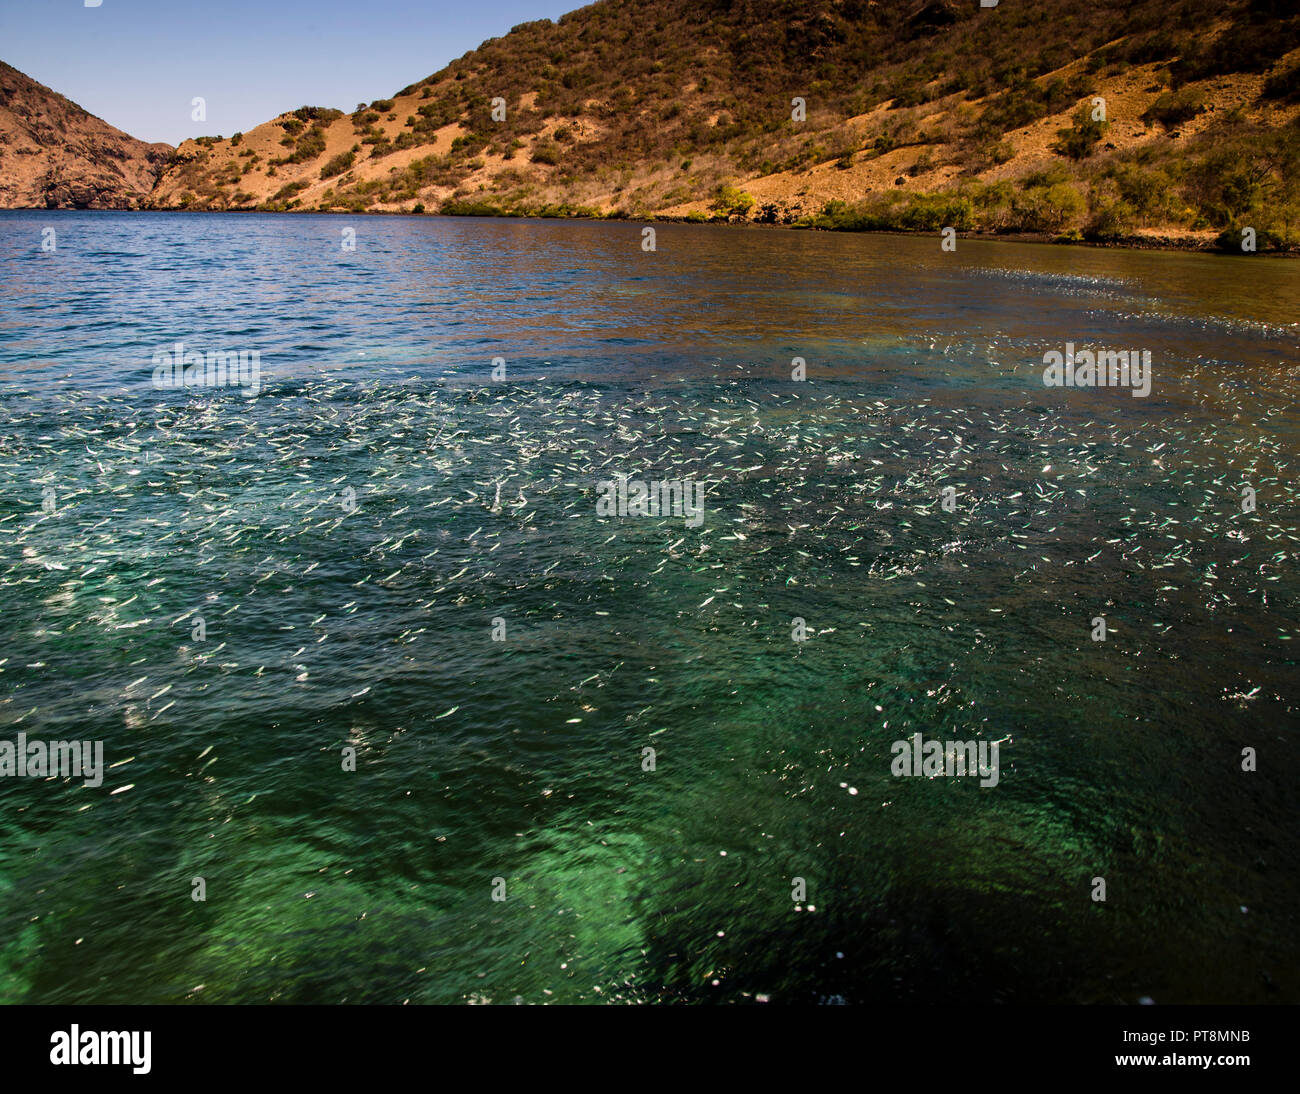 Las anchoas saltan del agua en masa, indicando la presencia de peces depredadores Foto de stock